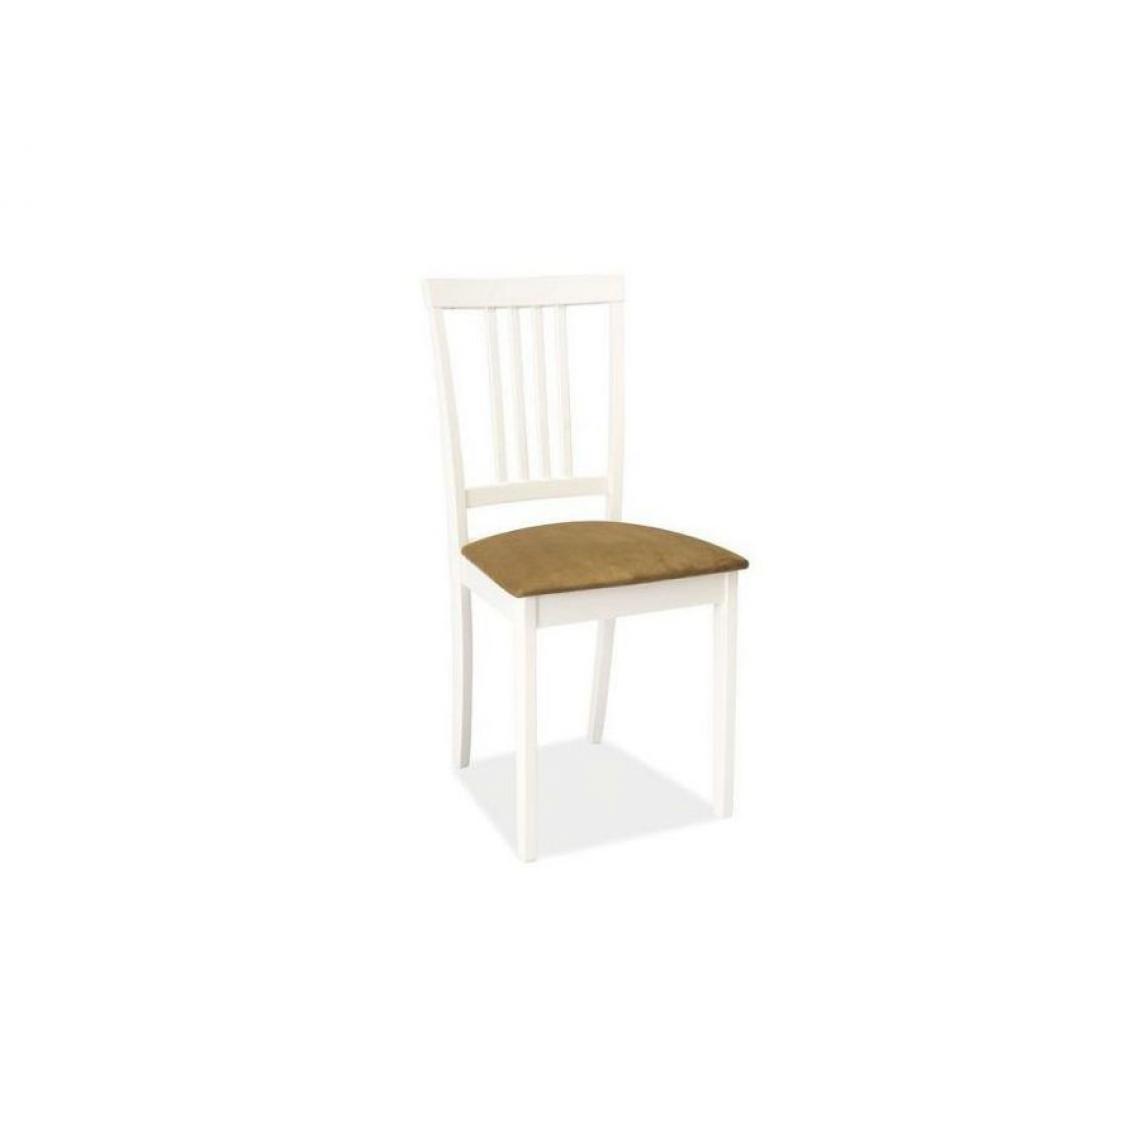 Hucoco - OLIV | Chaise en bois assise rembourrée style classique | Dimensions 96x41x43 cm | Rembourrage en tissu | Cuisine Salle à manger - Blanc - Chaises